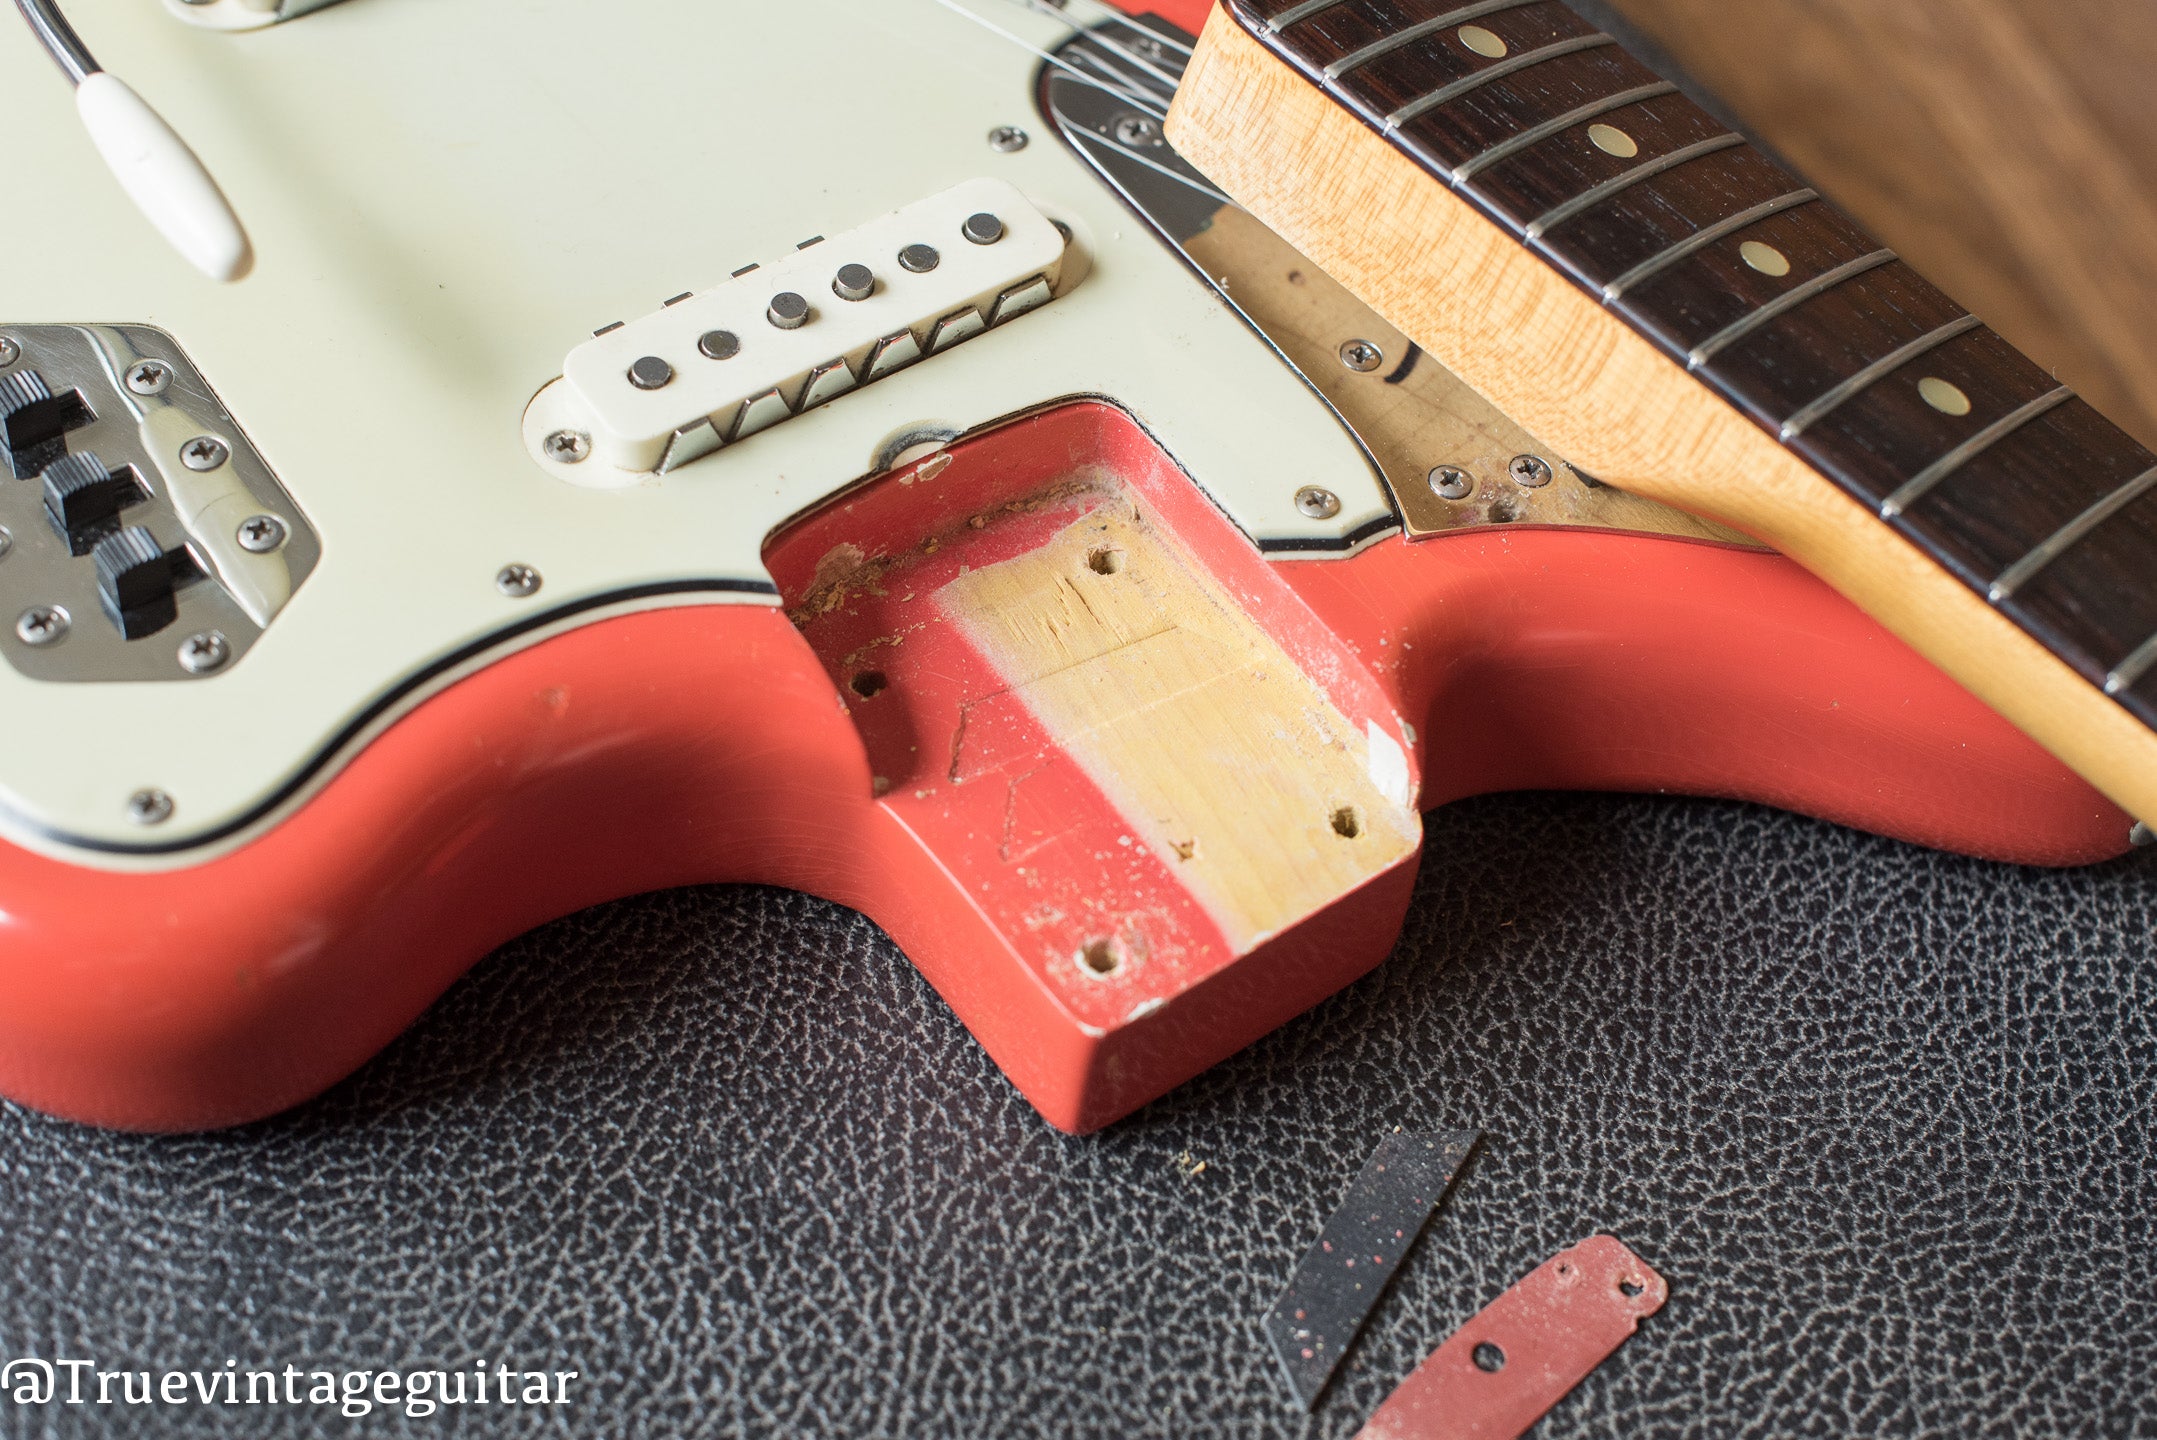 1965 Fender Jaguar Fiesta Red neck pocket with paint stick mark